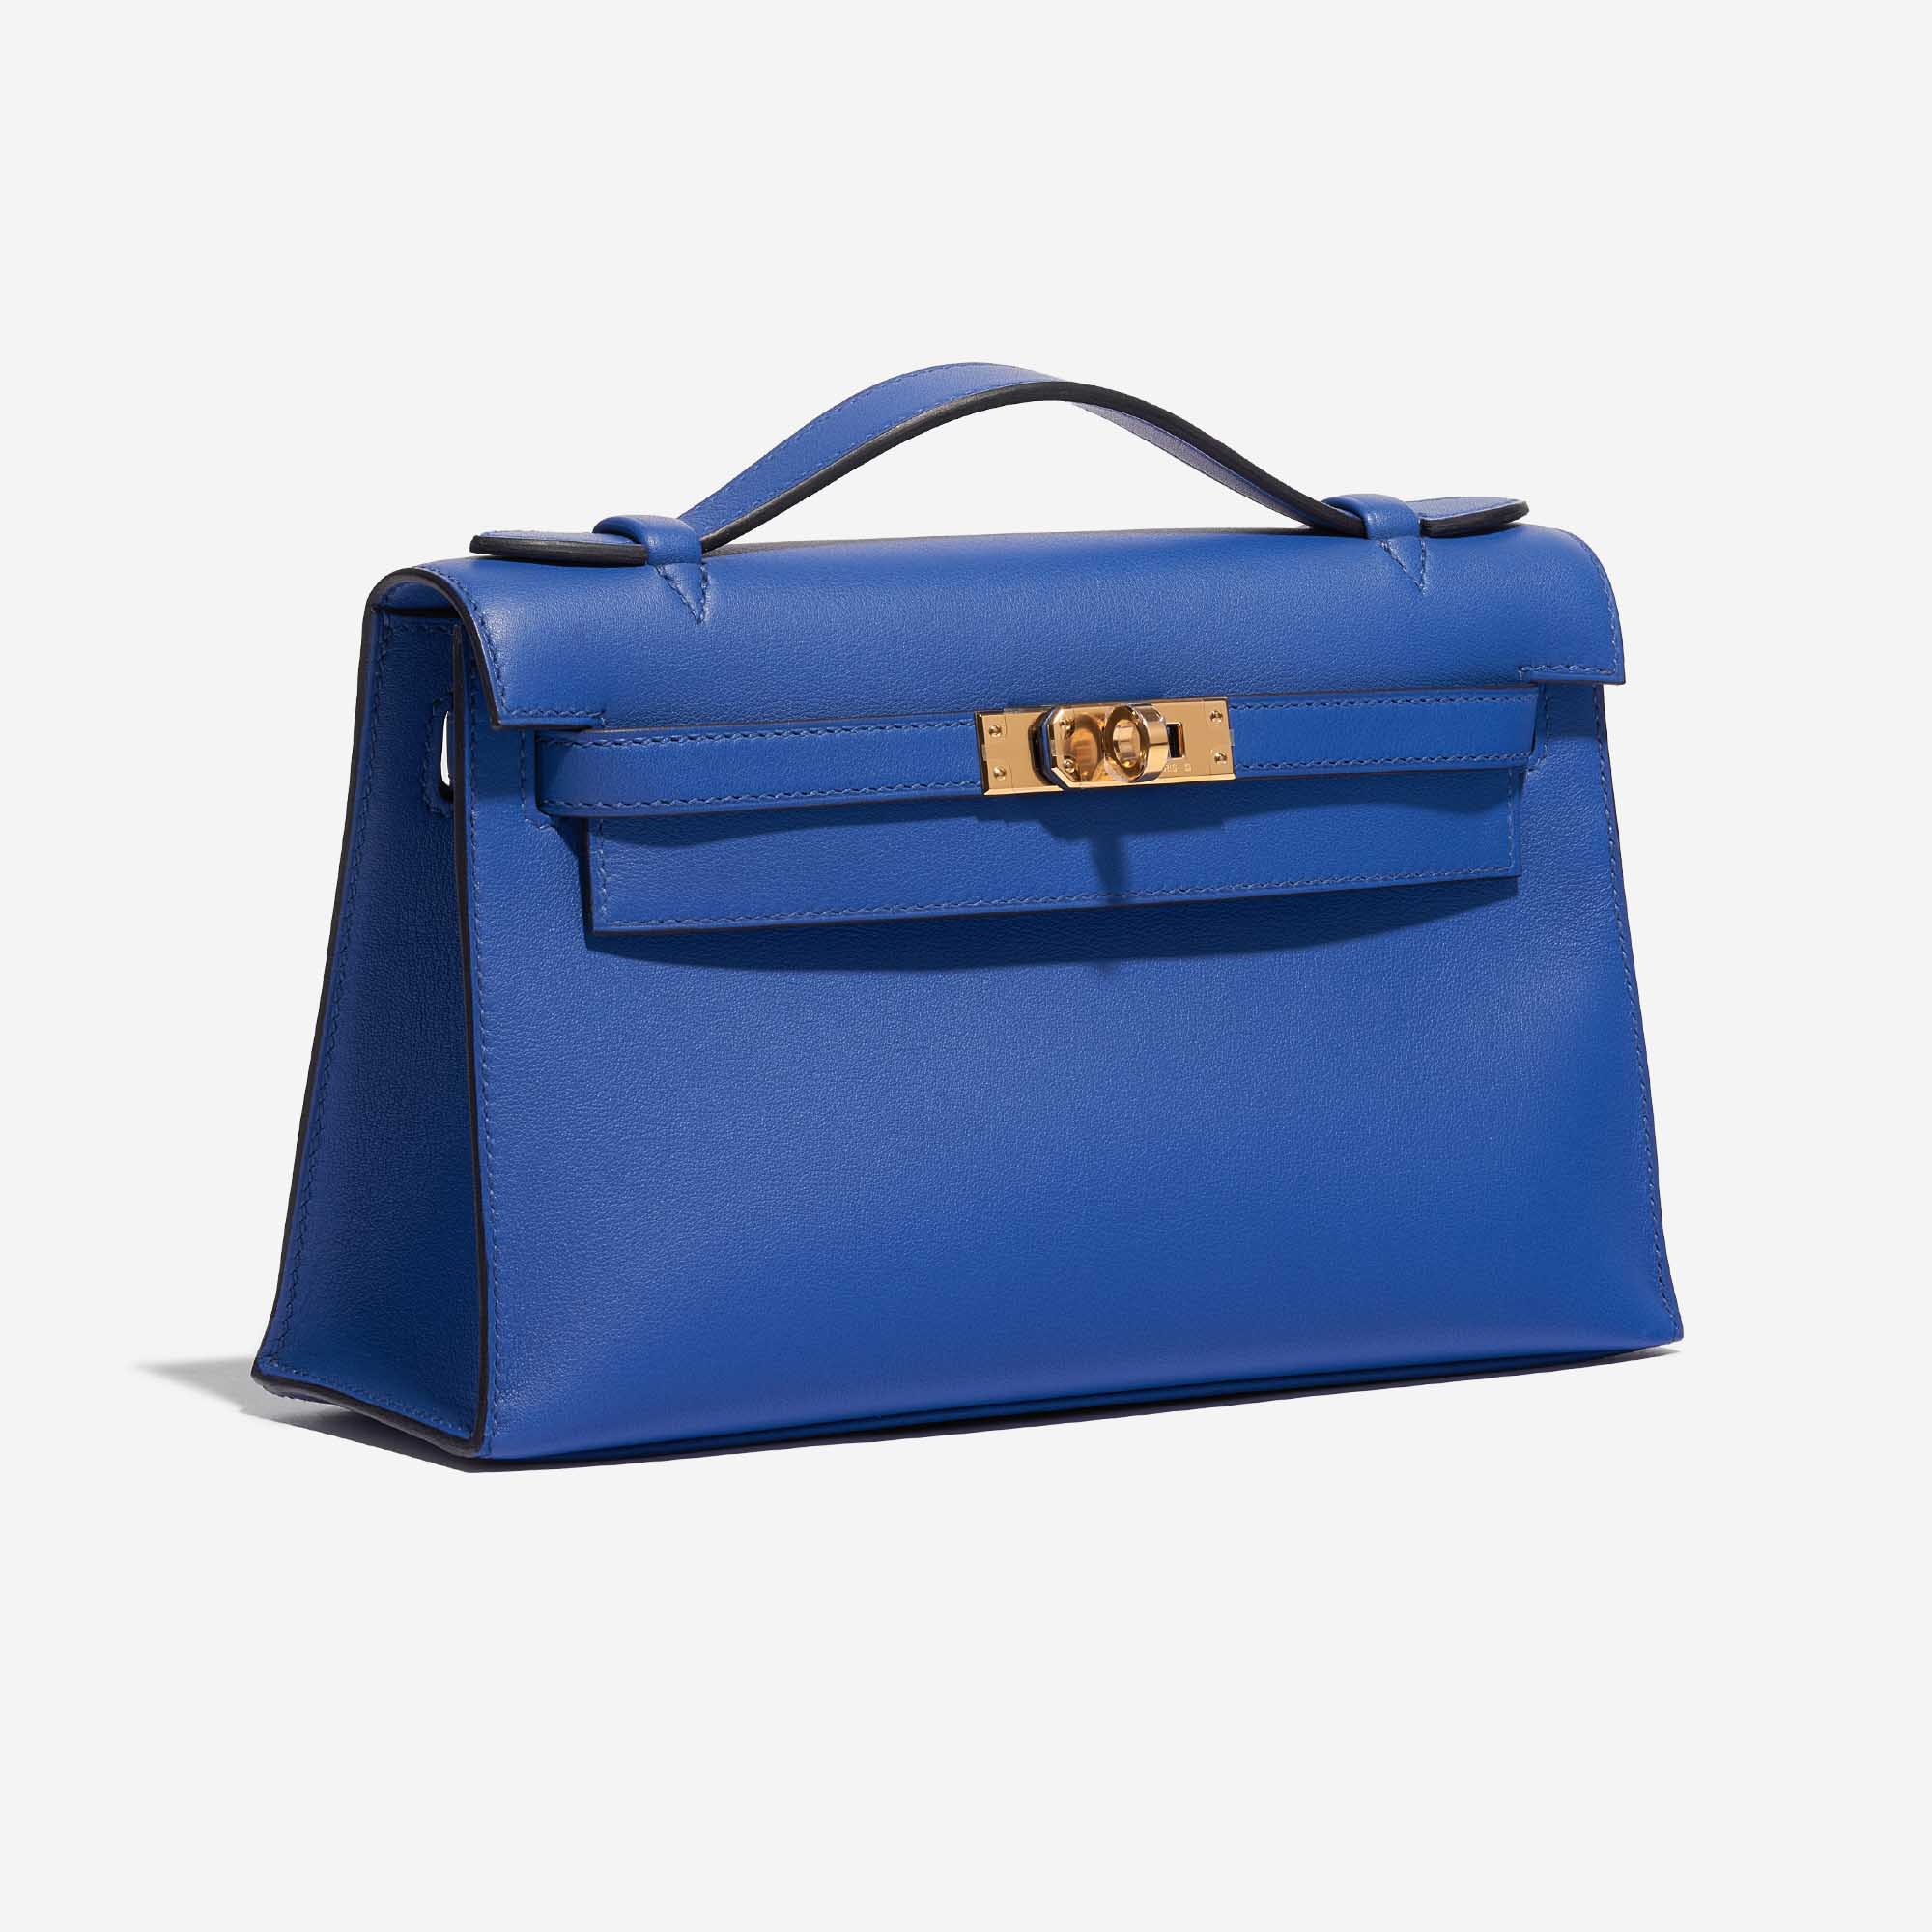 Sac Hermès d'occasion Kelly Pochette Swift Bleu de France Bleu Côté Face | Vendez votre sac de créateur sur Saclab.com